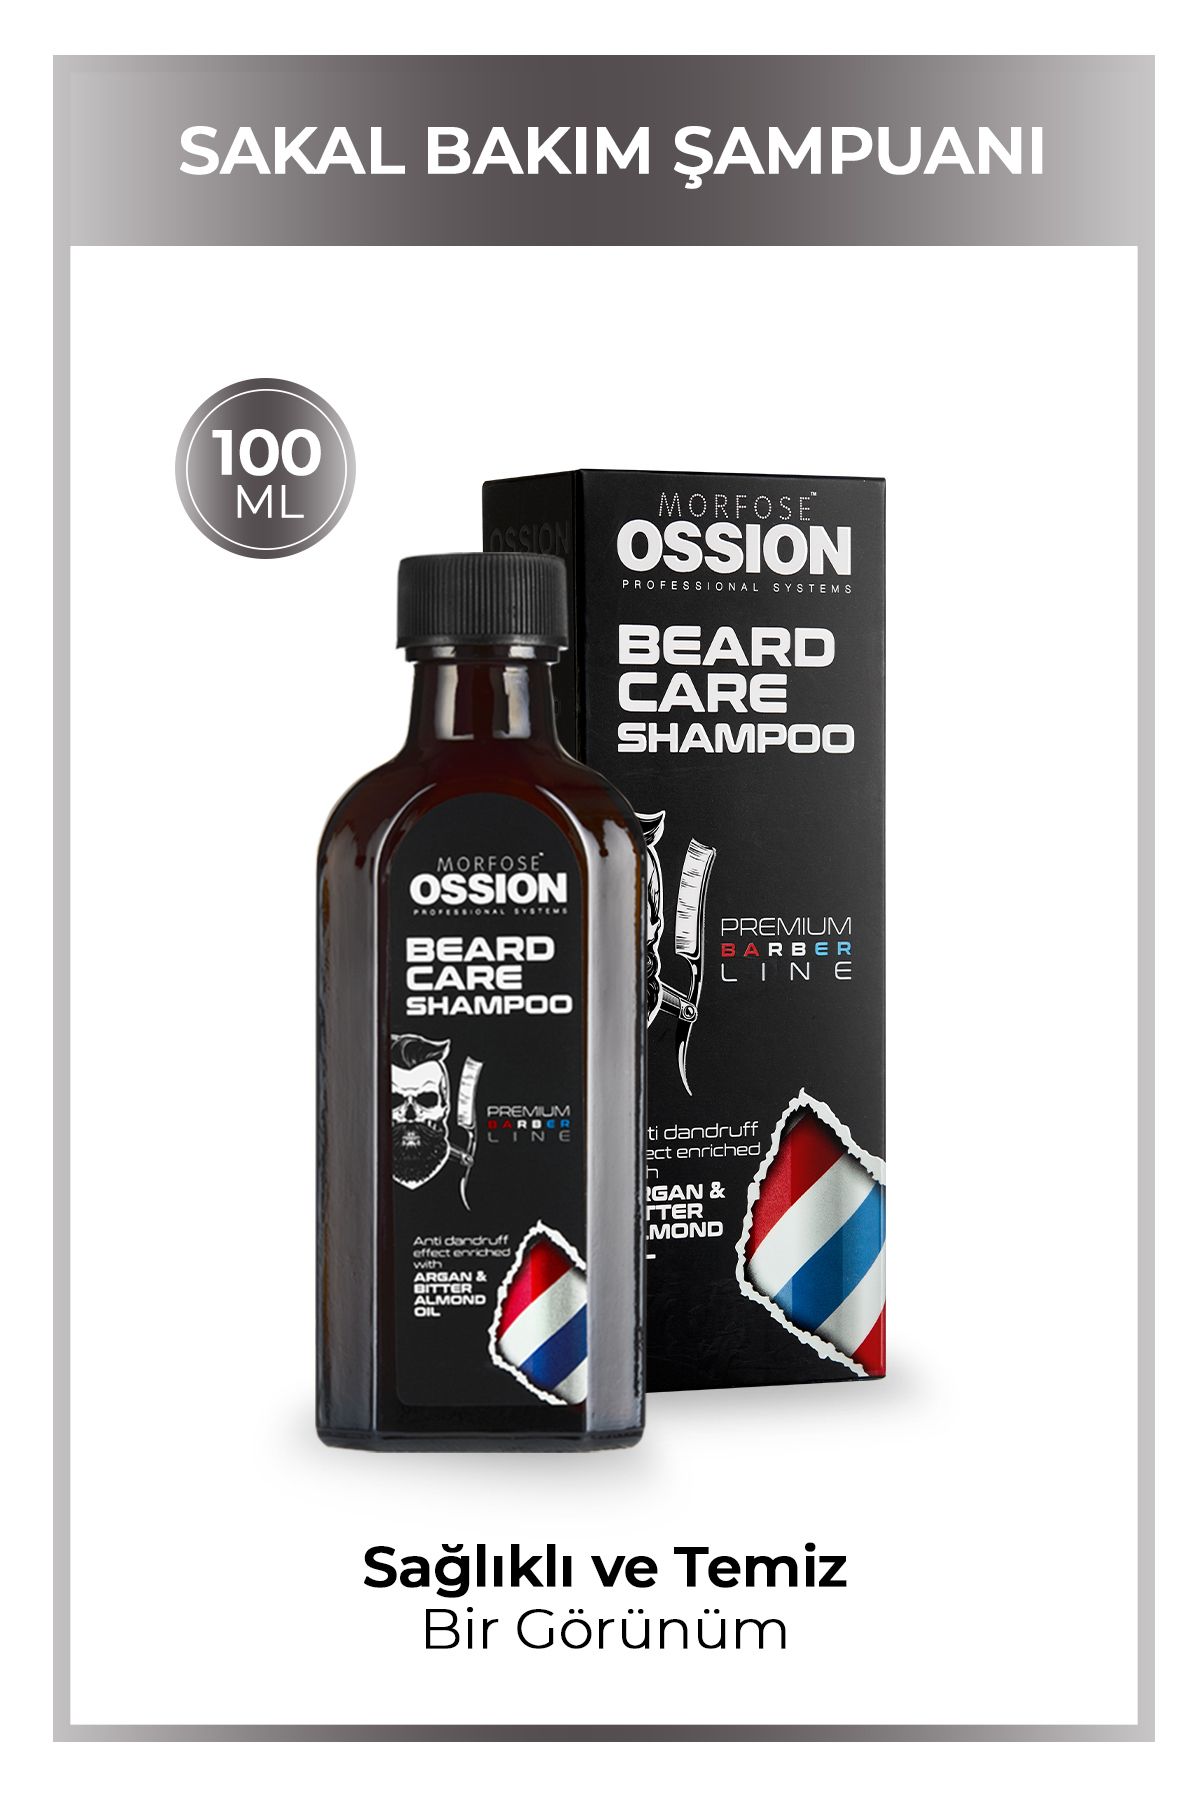 Morfose Ossion Premium Barber Line Sakal Bakım Şampuanı 100 ml